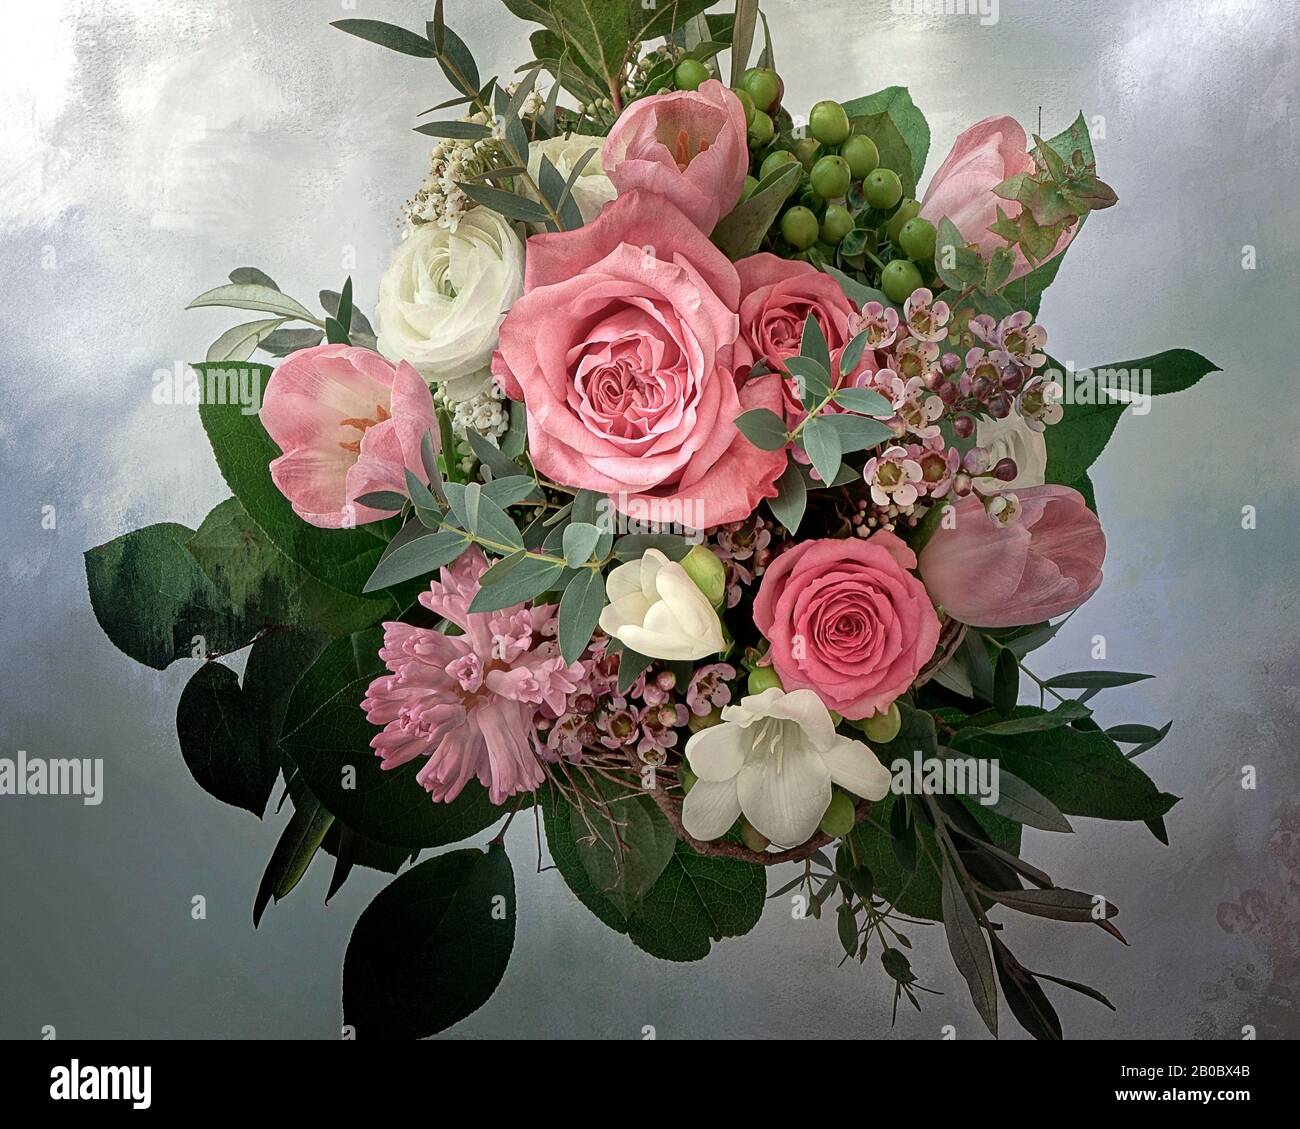 PHOTO ART: Floral Arrangement Stock Photo